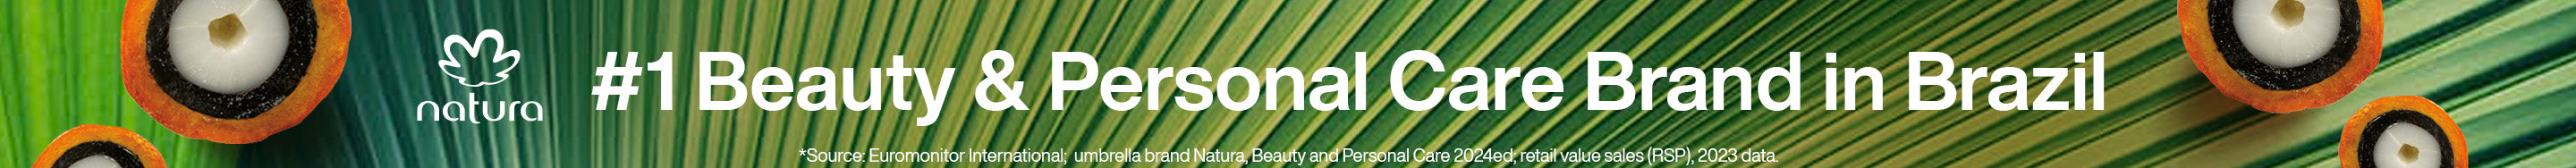 Natura Brasil | #1 Beauty & Personal Care Brand in Brazil